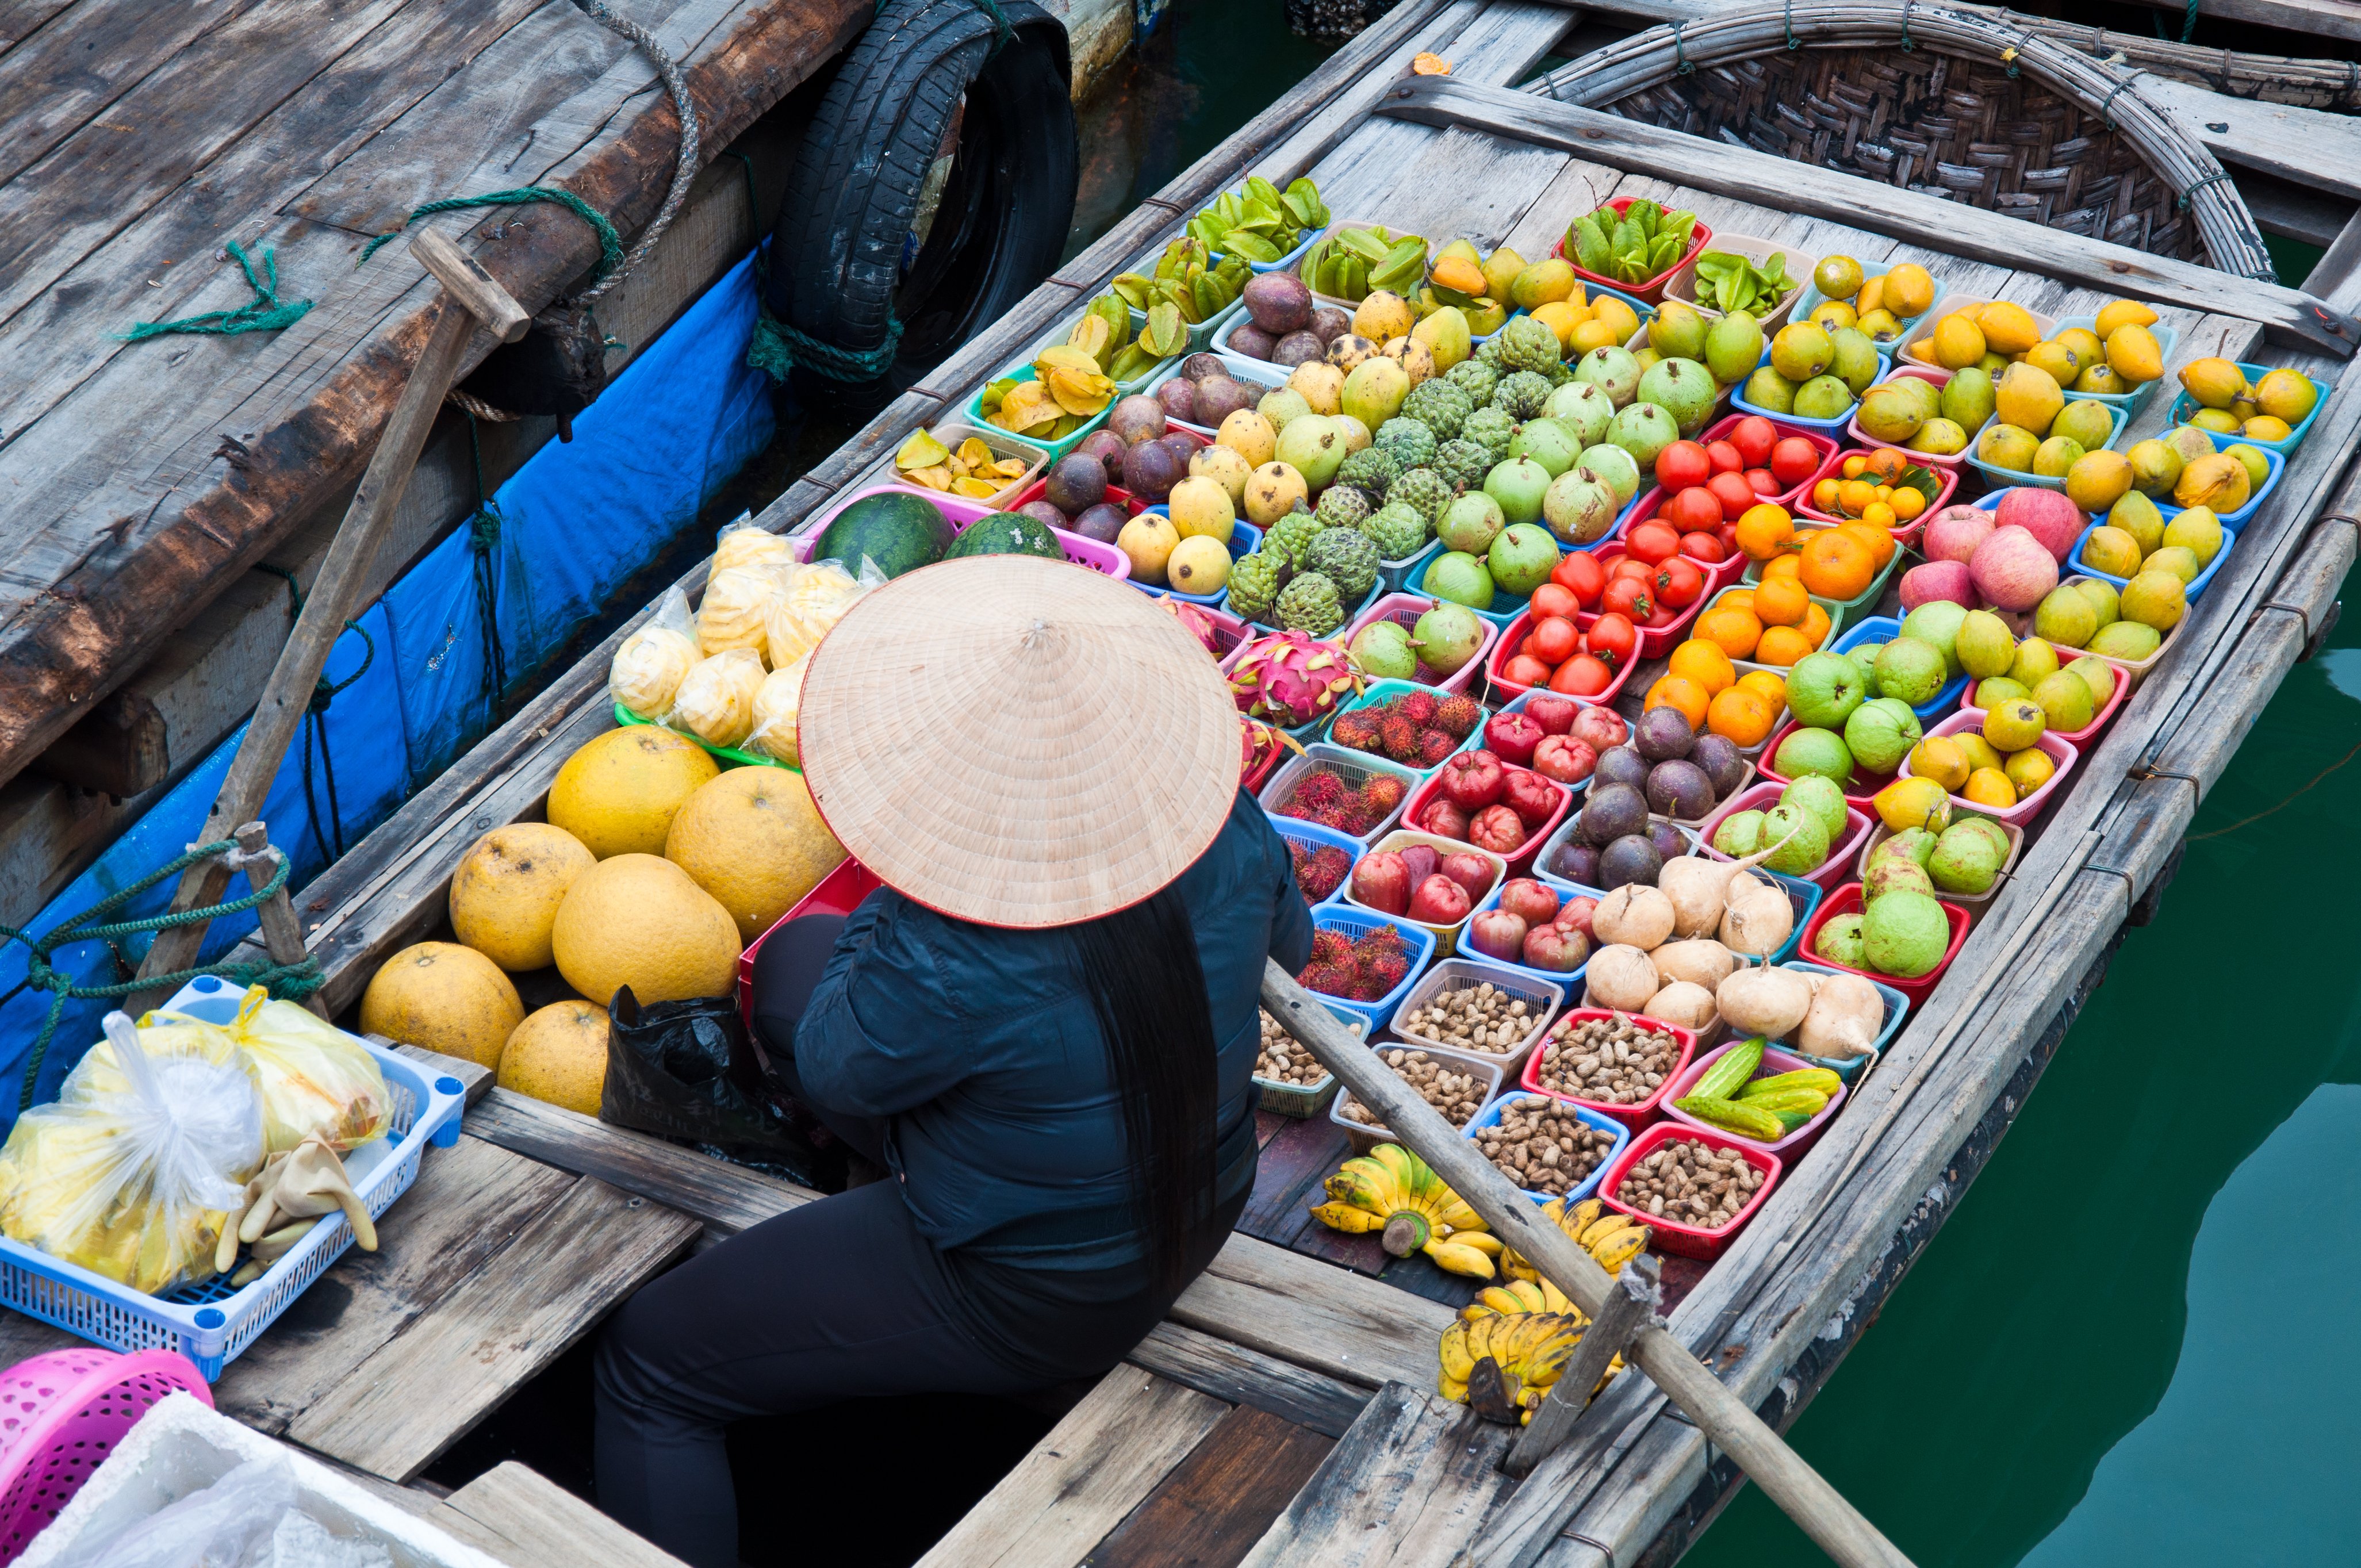 Vietnam Floating Markets